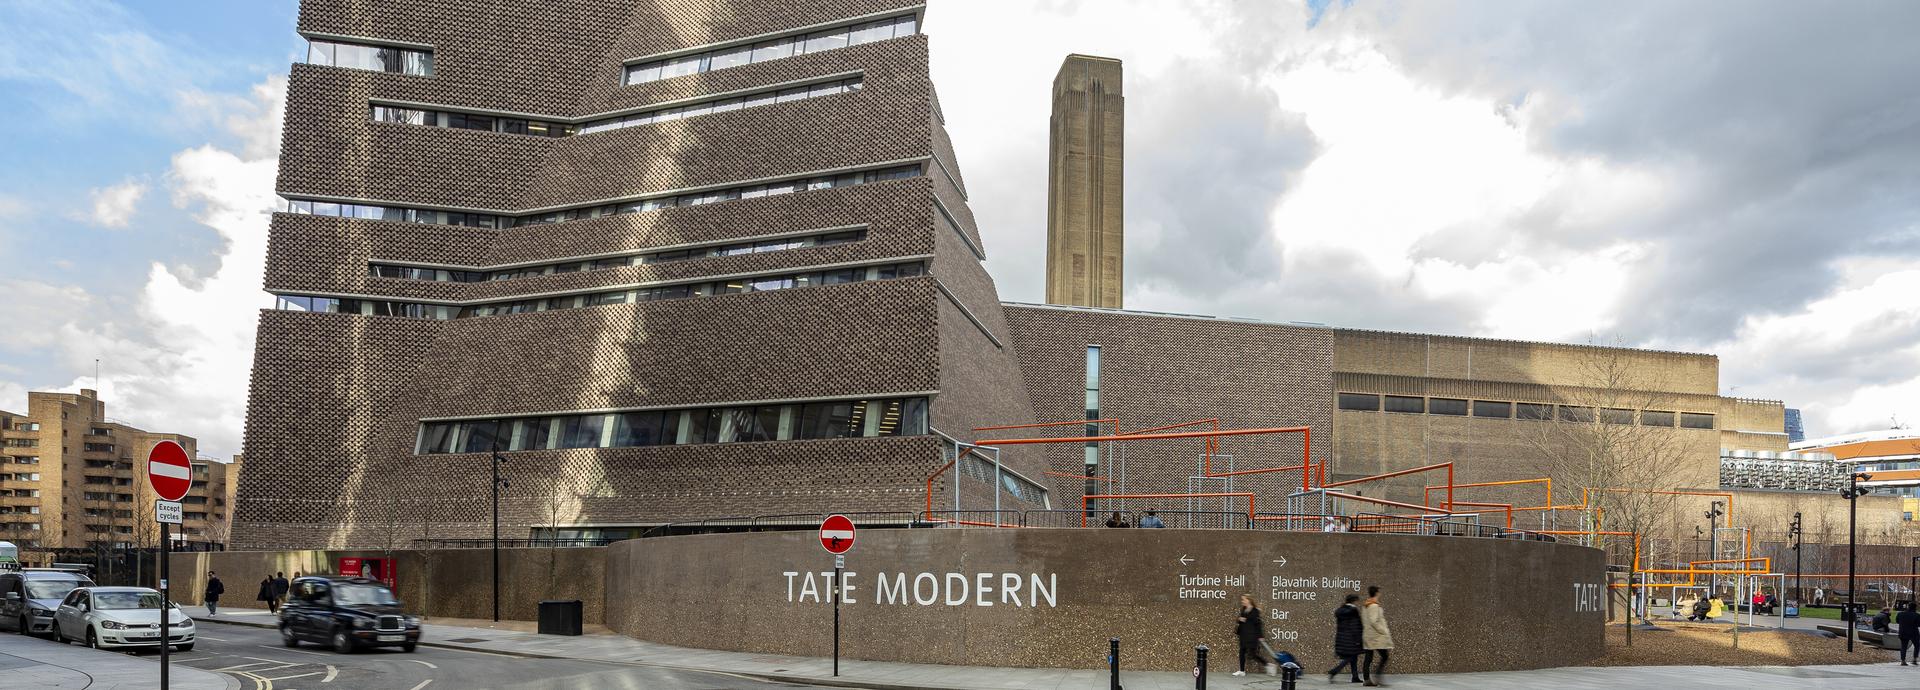 Tate Modern 2.tif